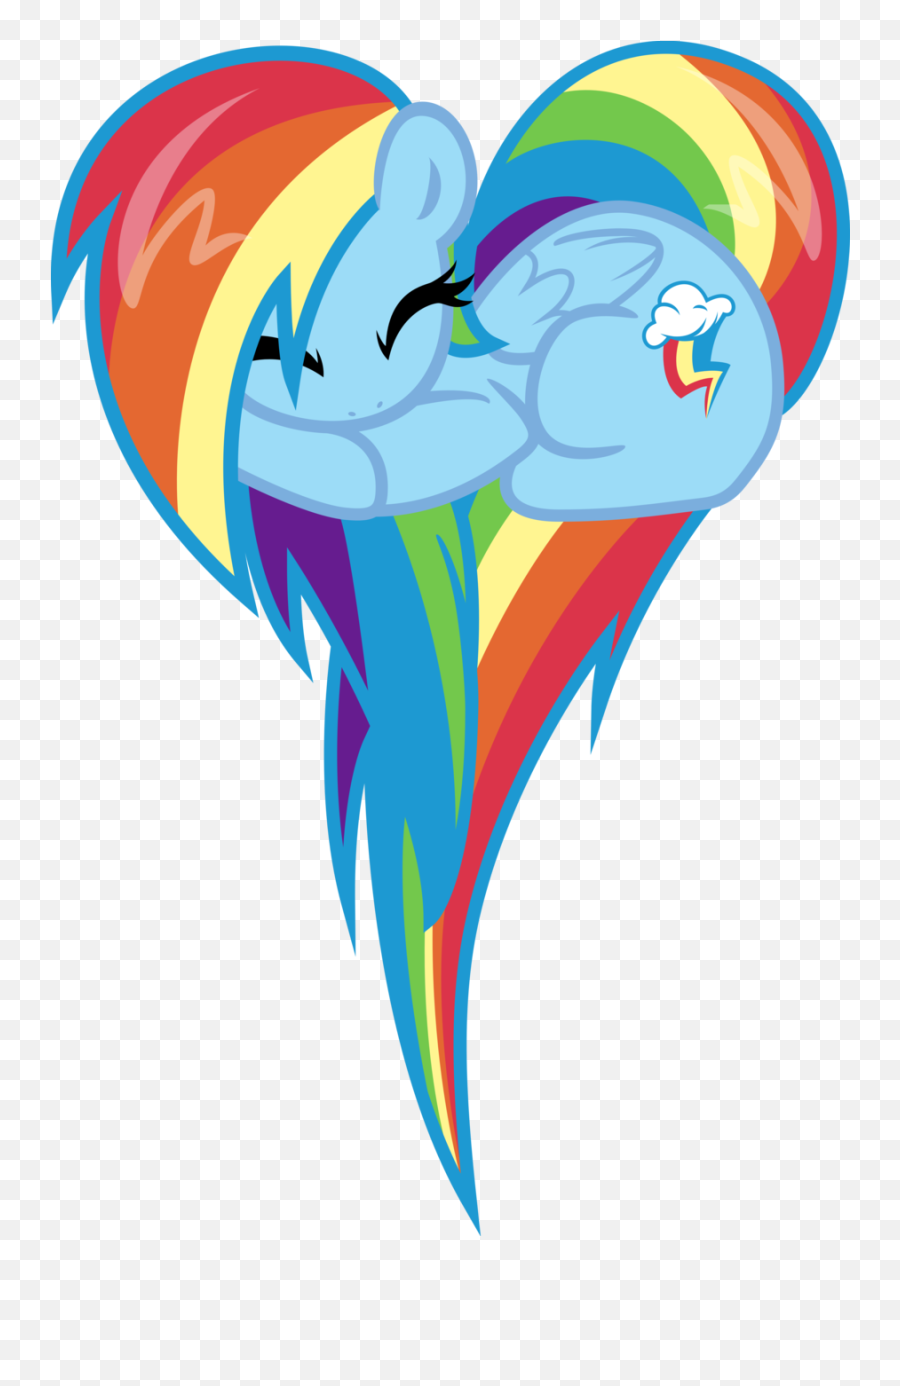 Rainbow Dash Bedroom Ideas - My Little Pony In A Heart Emoji,Dash Symbol Emoji